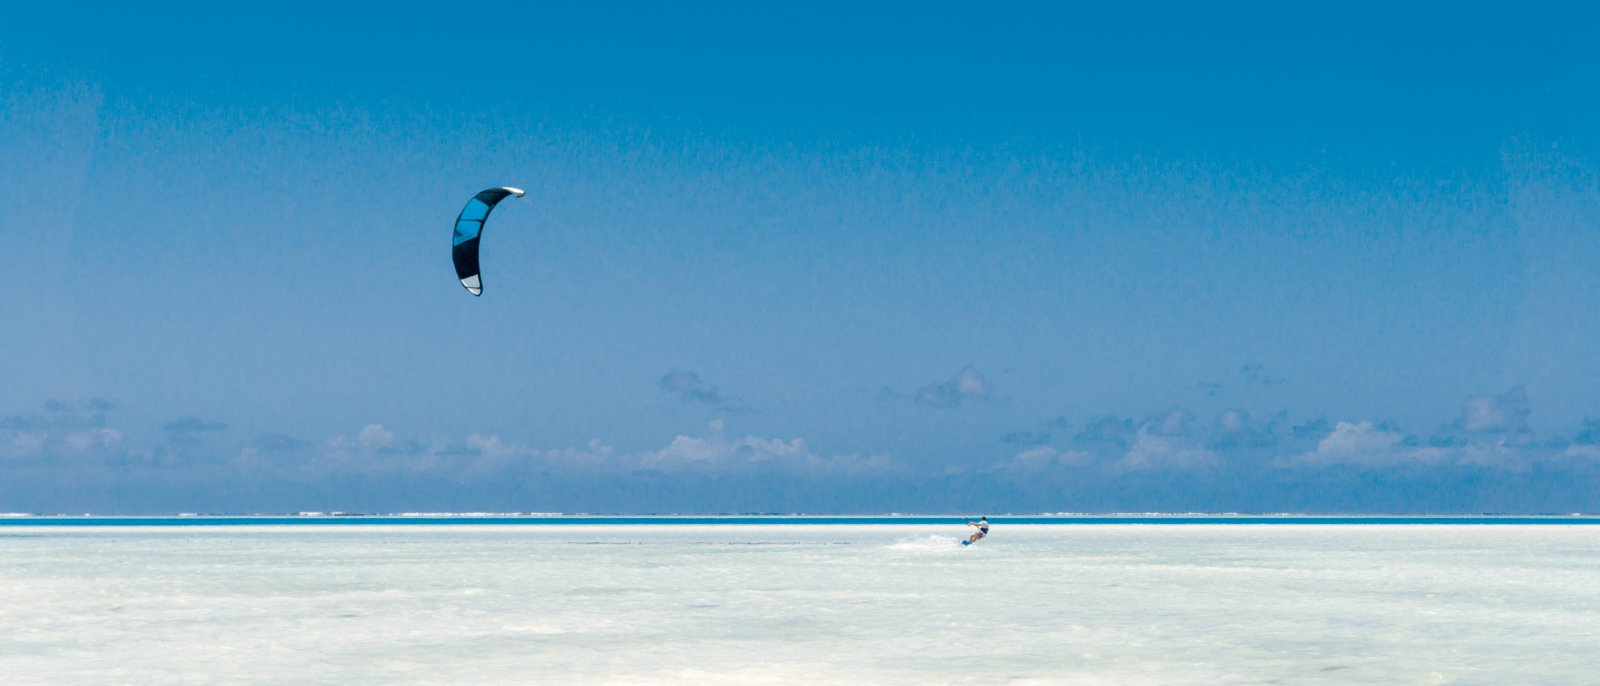 kitesurfing on tropical sea at low tide in Jambiani, Zanzibar, Tanzania Africa